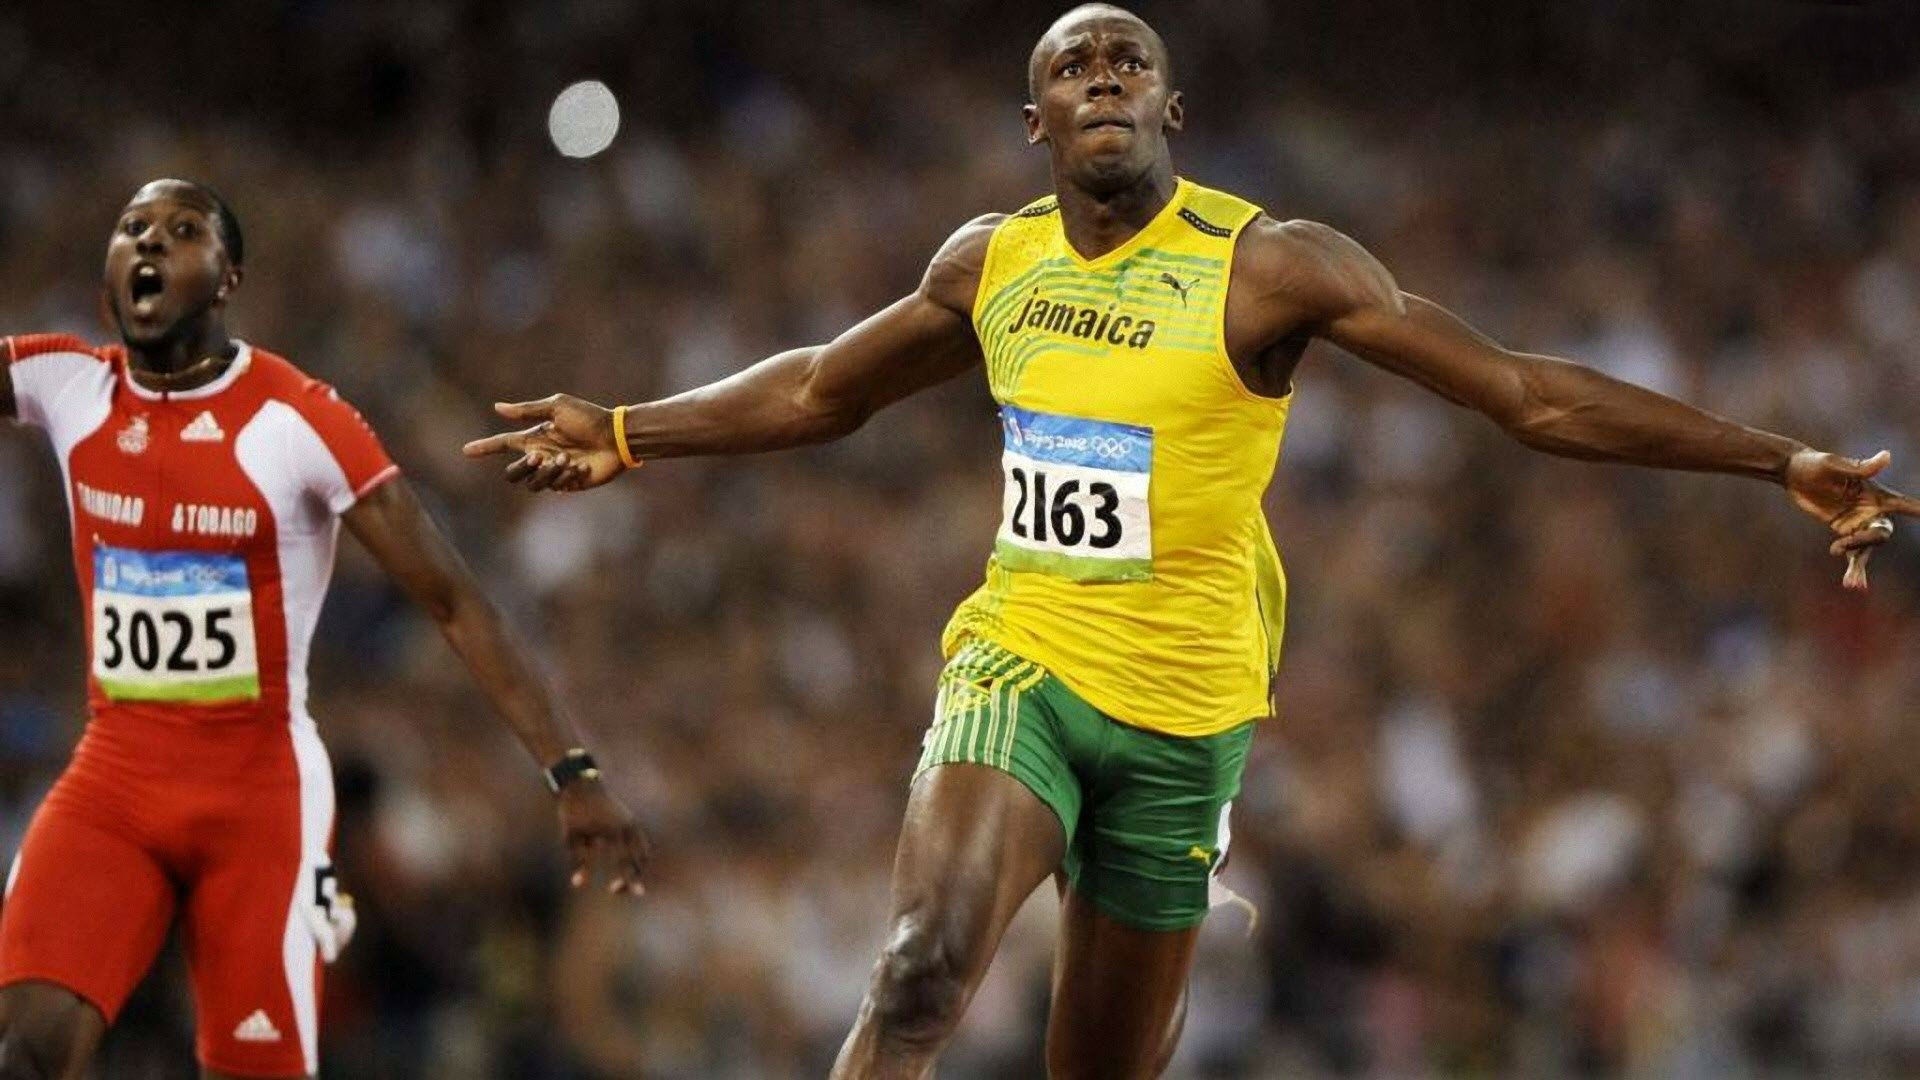 1920x1080 Usain Bolt Running